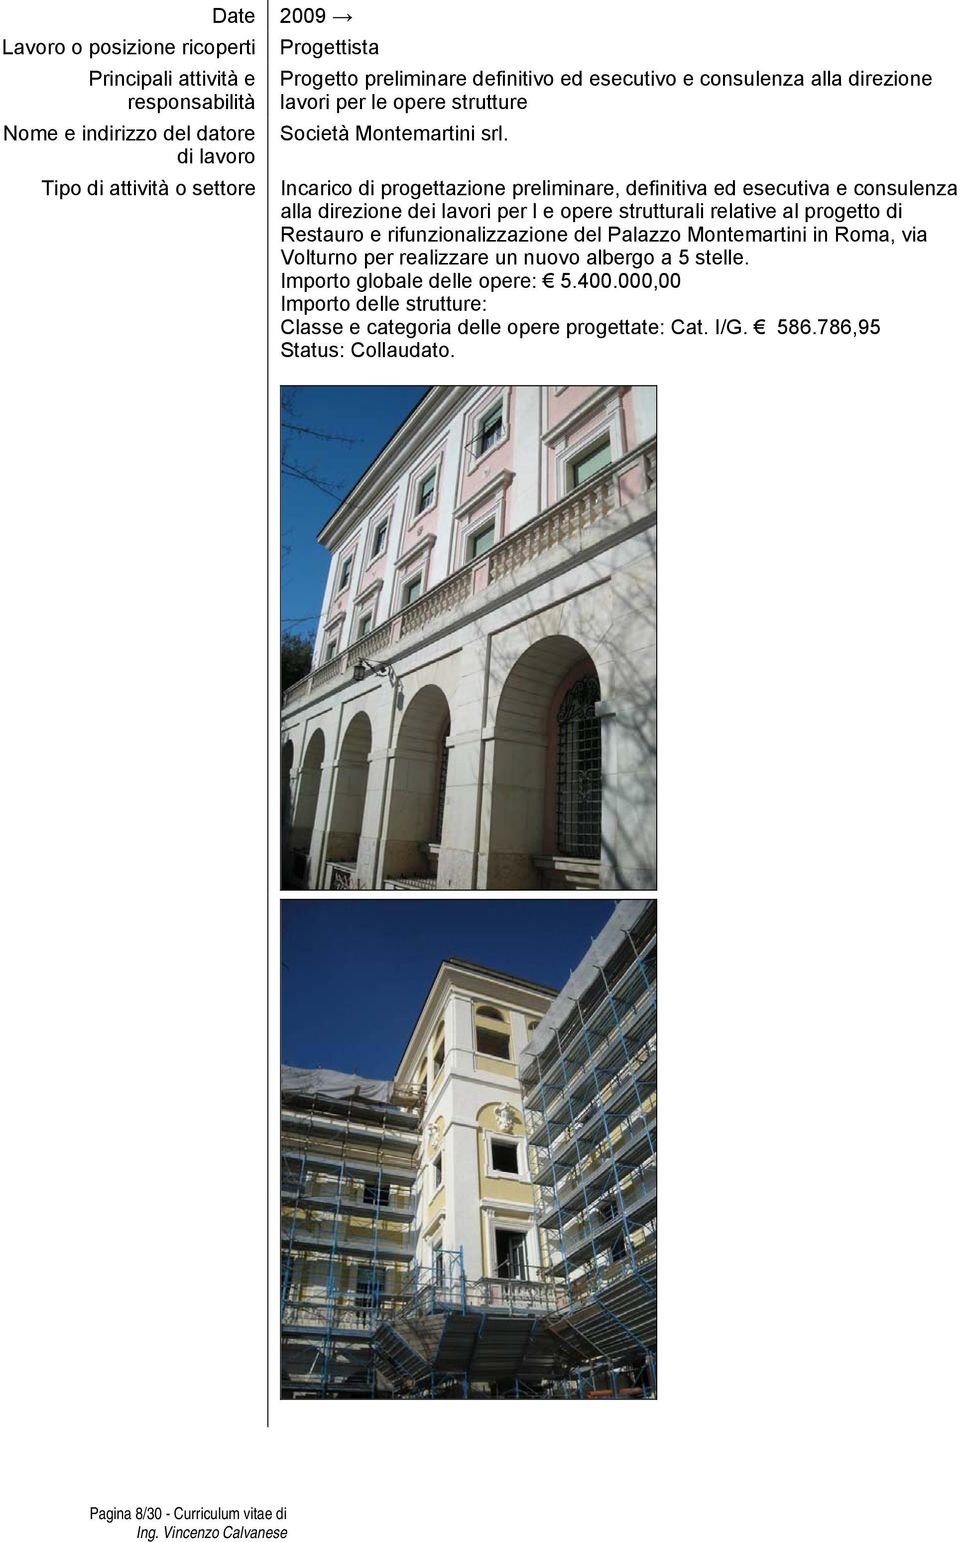 Restauro e rifunzionalizzazione del Palazzo Montemartini in Roma, via Volturno per realizzare un nuovo albergo a 5 stelle.